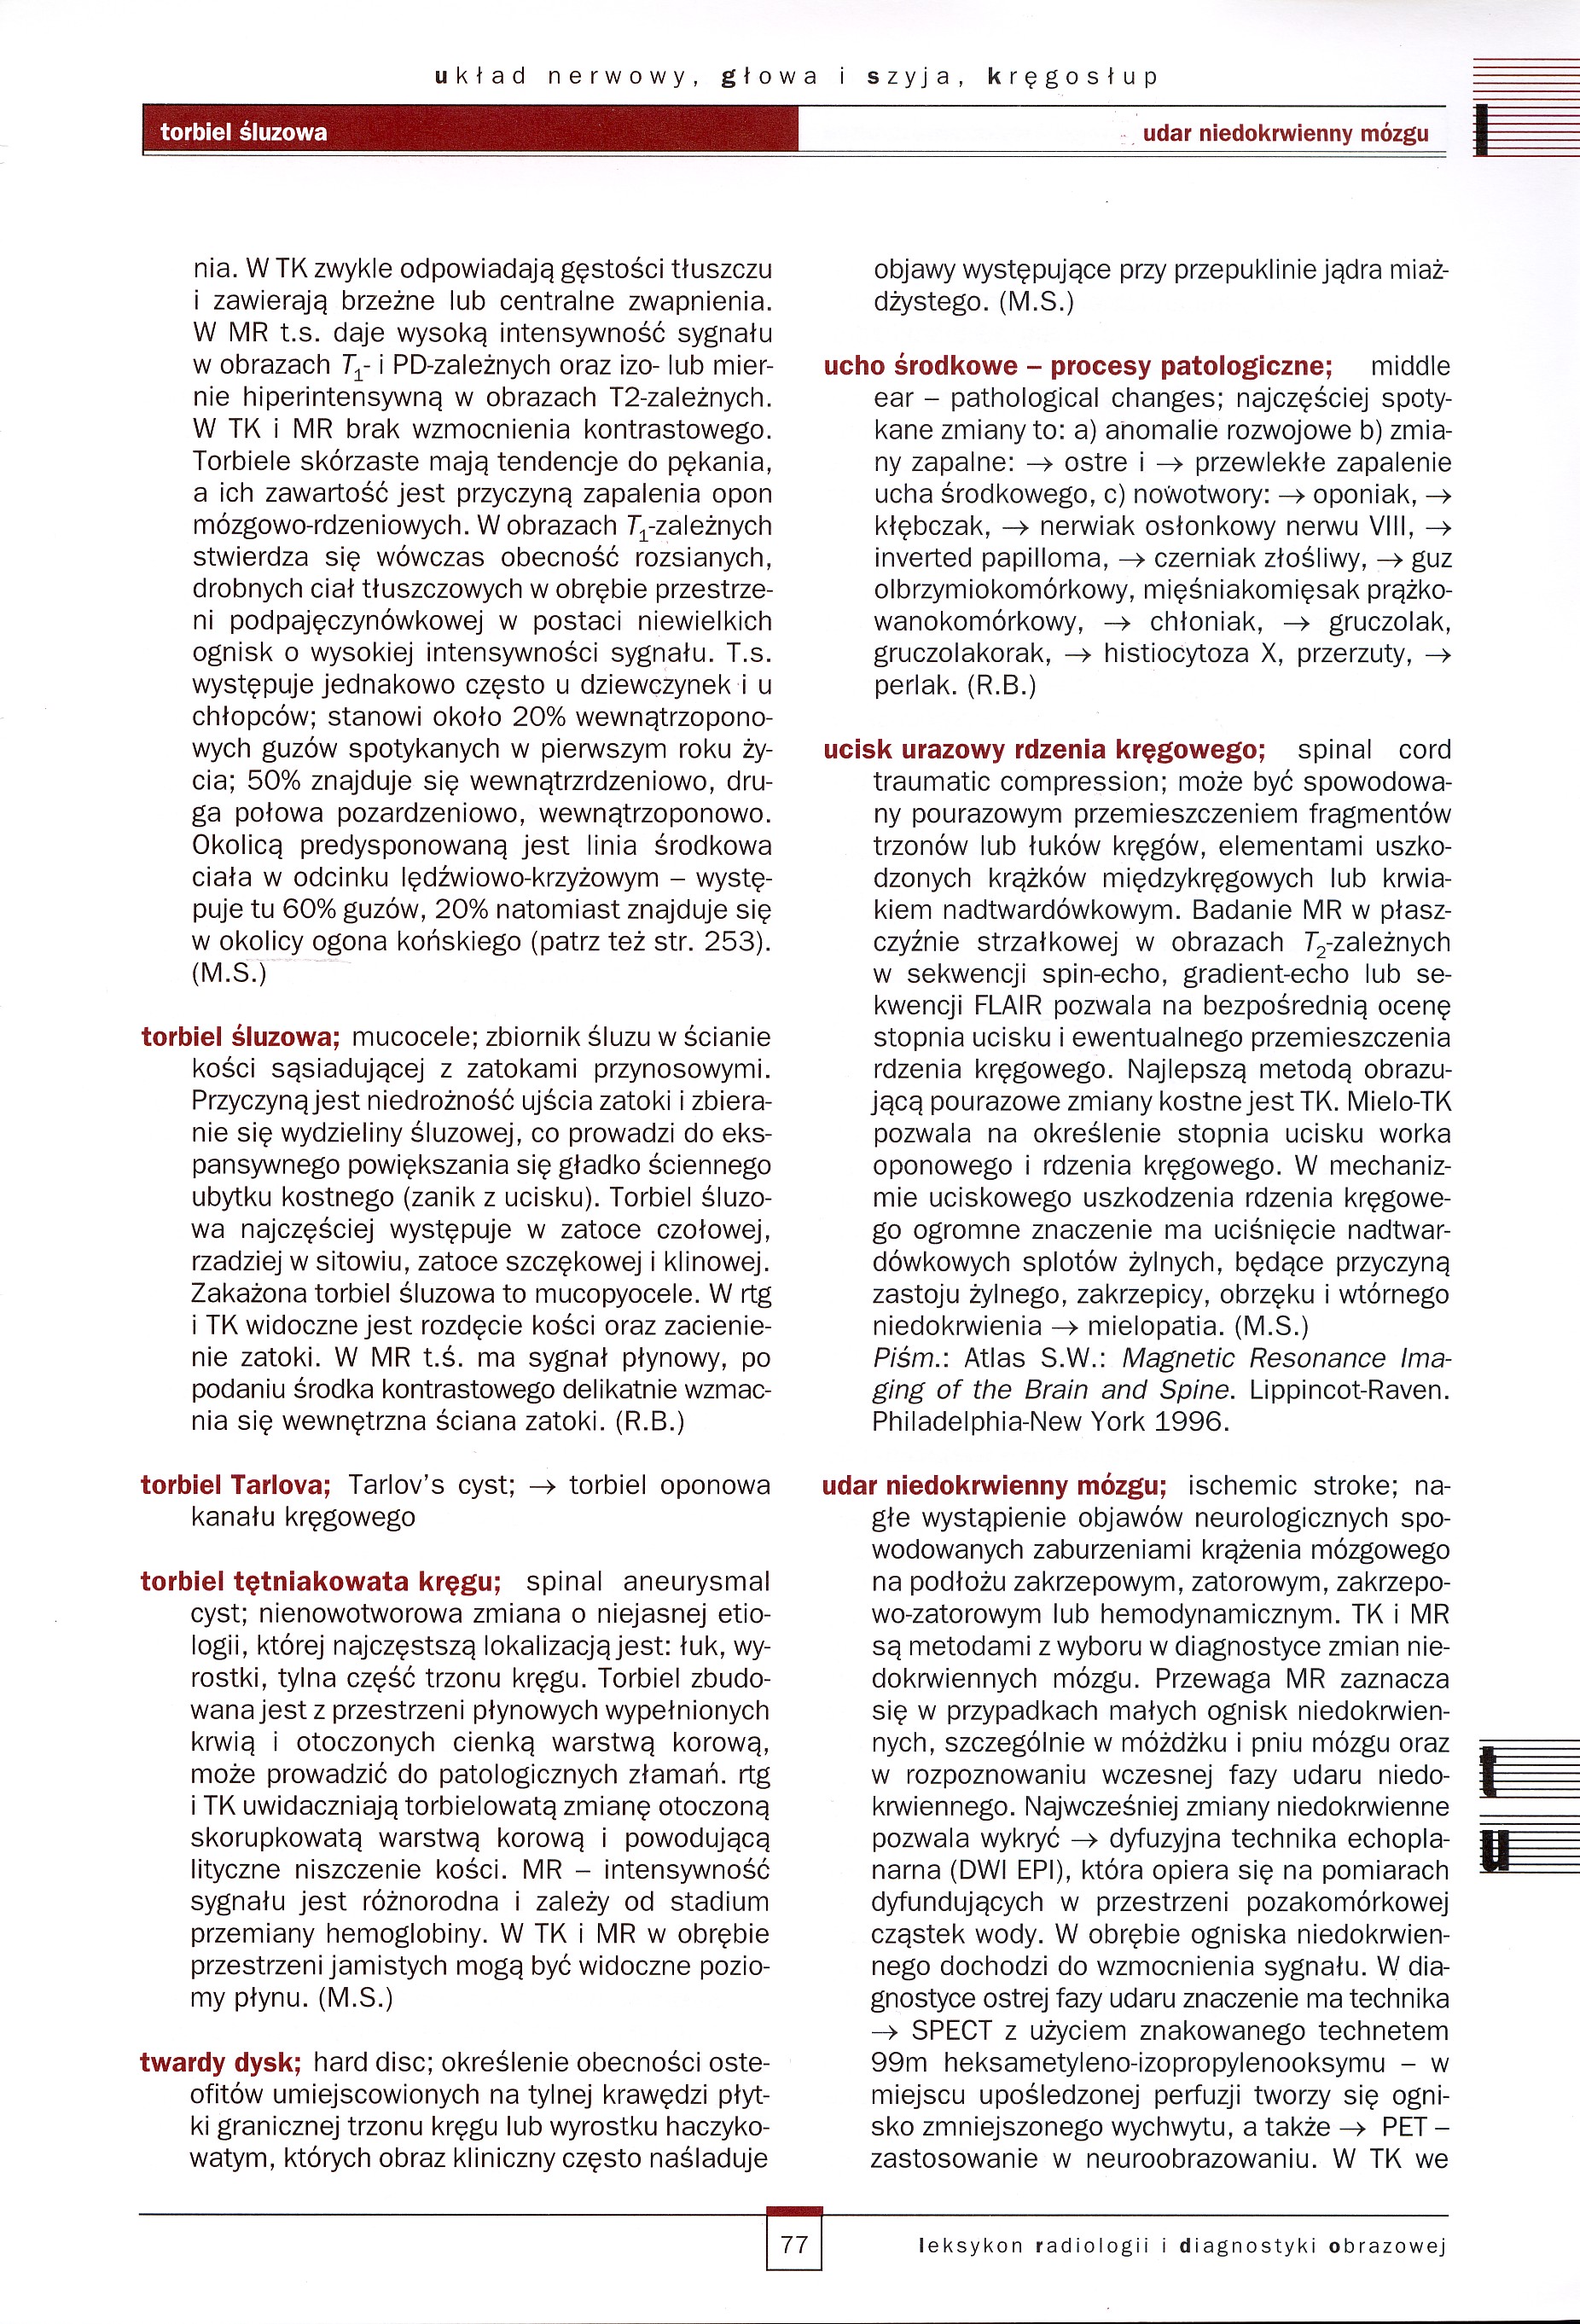 Leksykon Radiologii I Diagnostyki Obrazowej - J. Walecki - 77.jpg